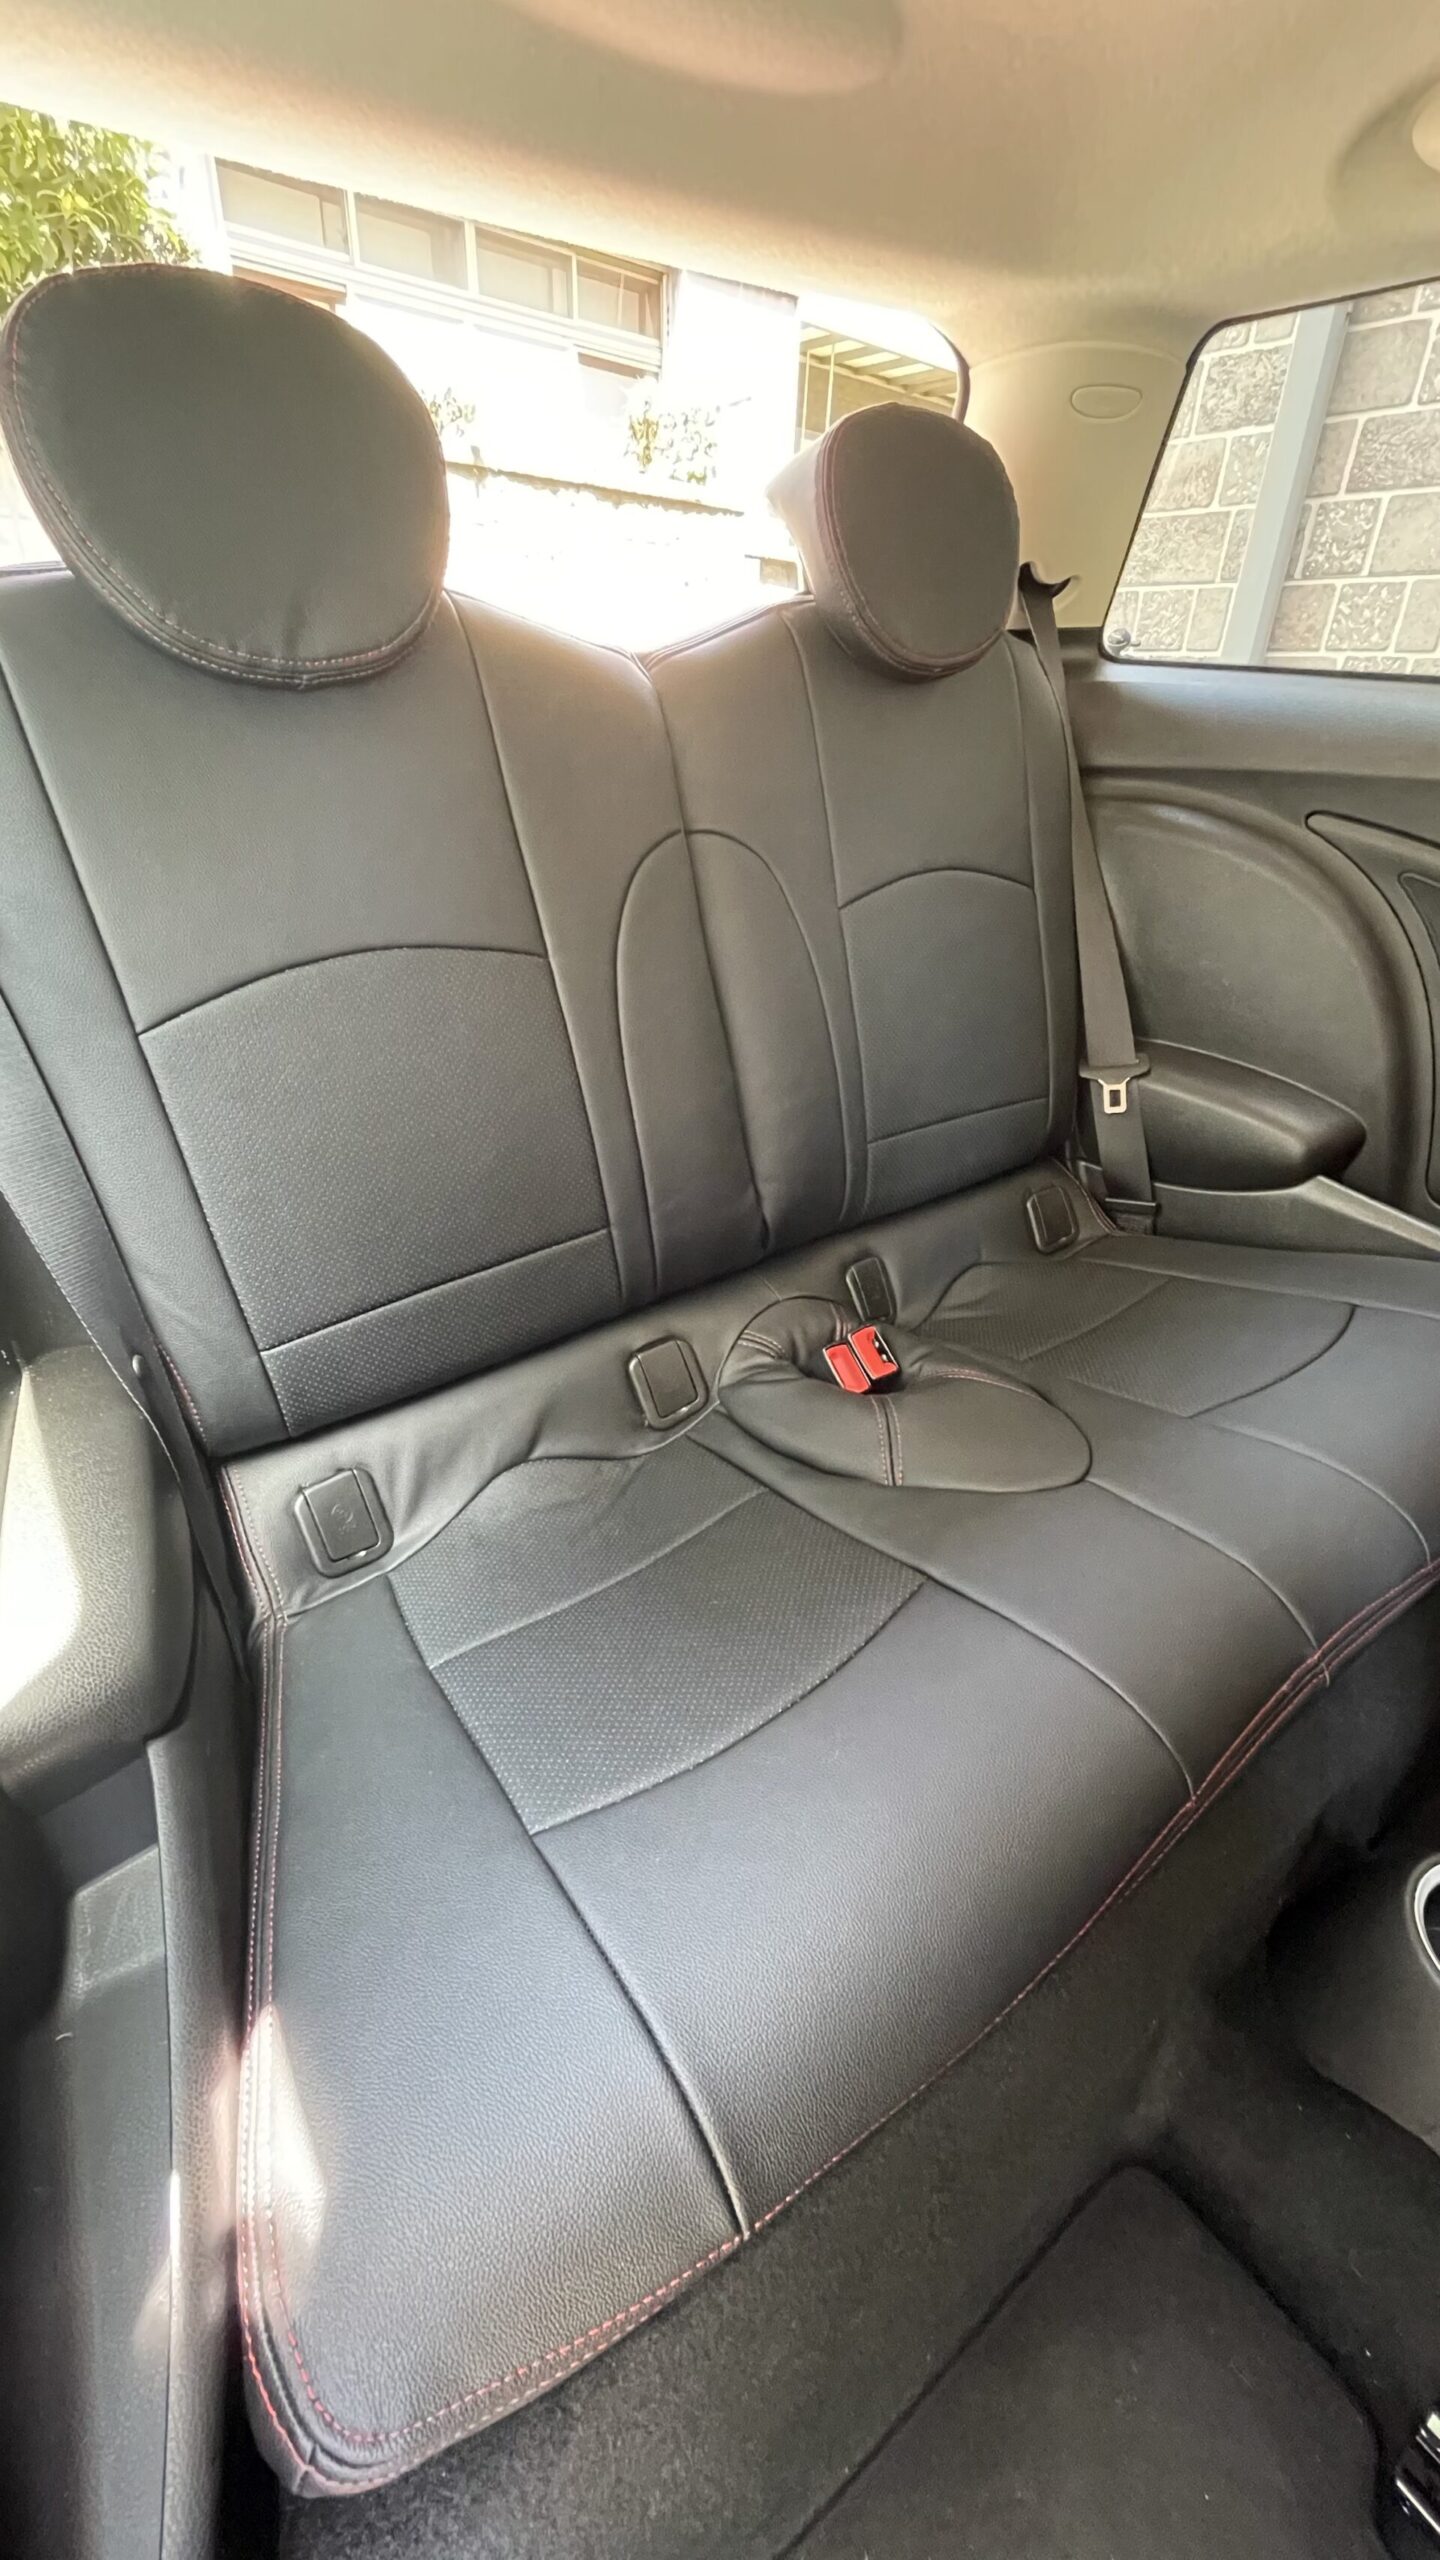 【装着写真】BMWMINI R56 Refinad Leather Deluxe Series シートカバー [品番:BM0205-03]